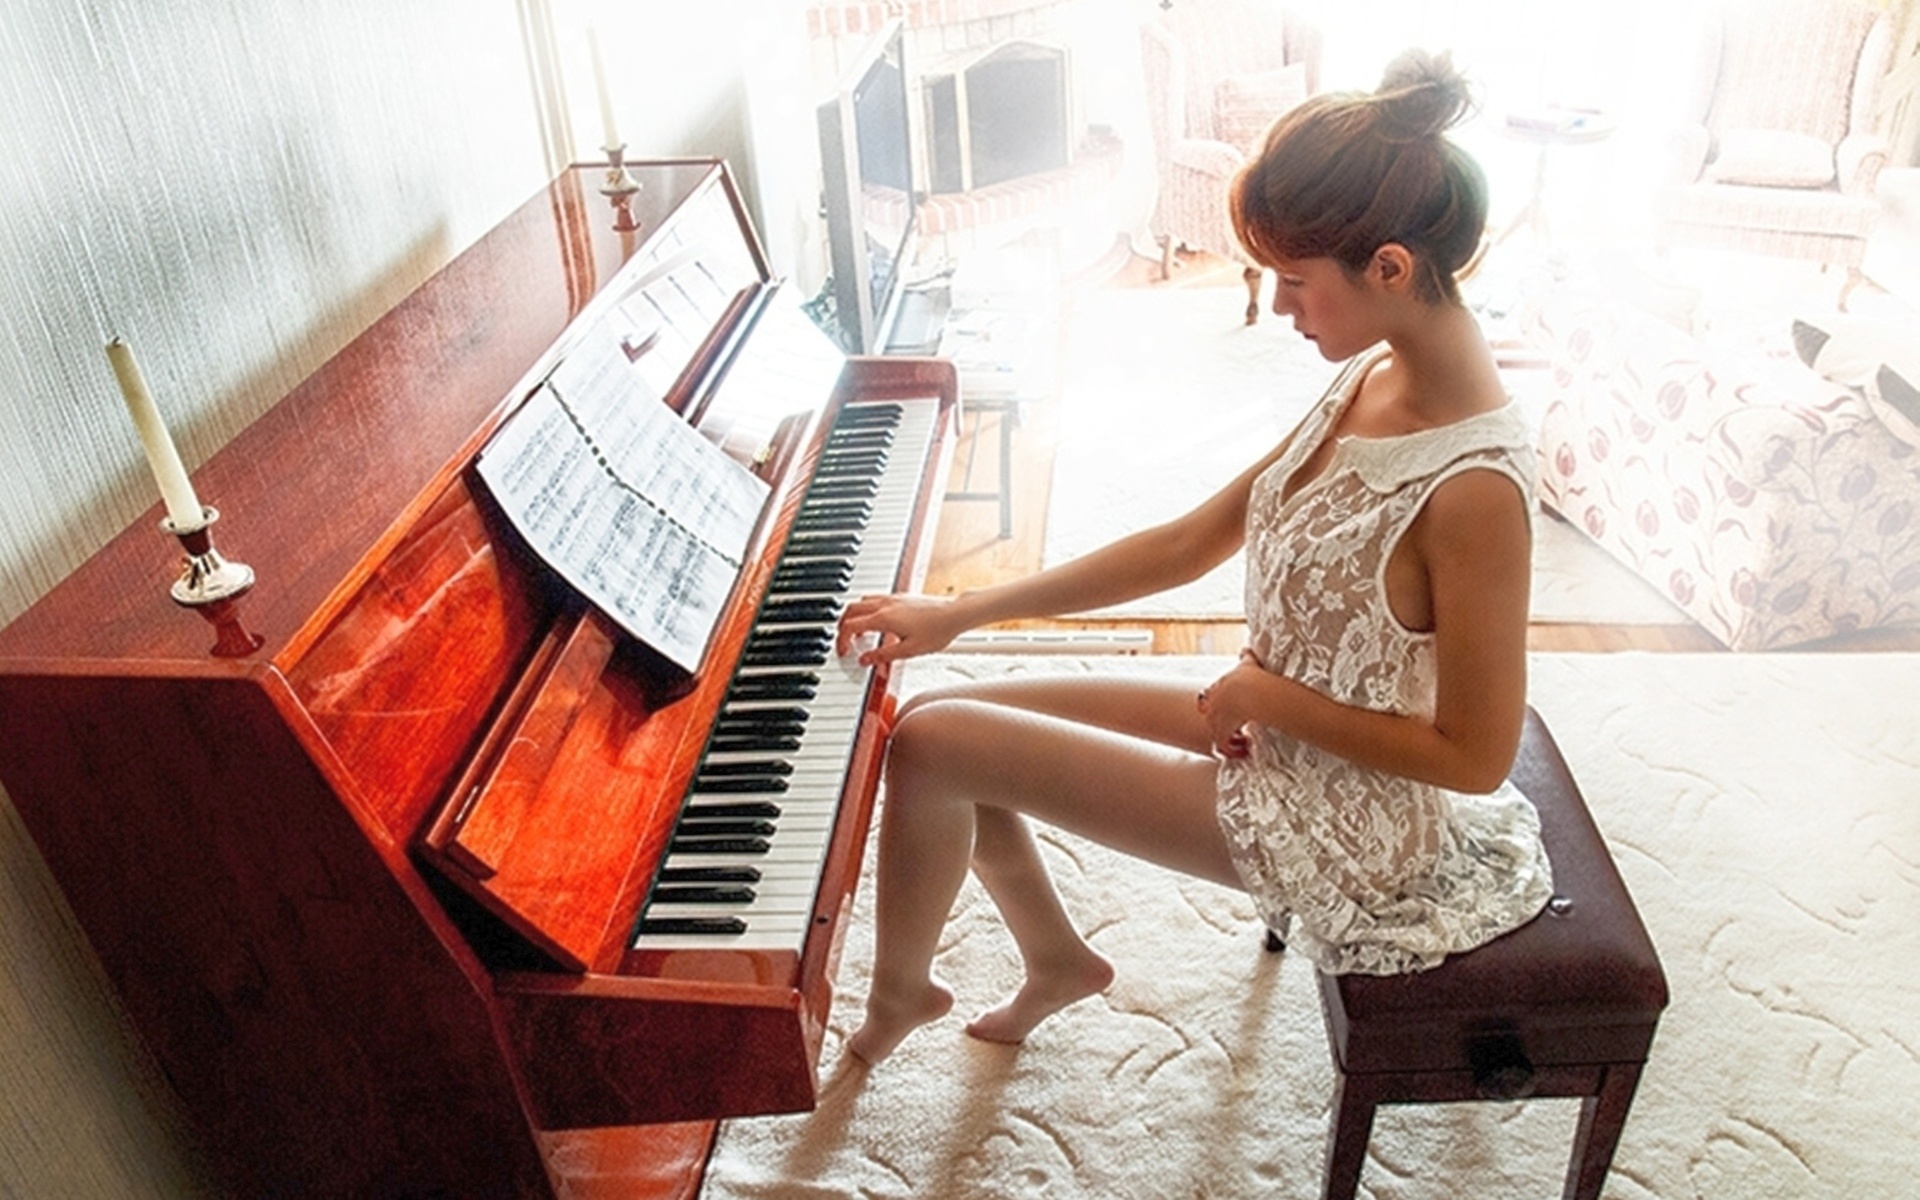 Голая продажная девушка играет на пианино